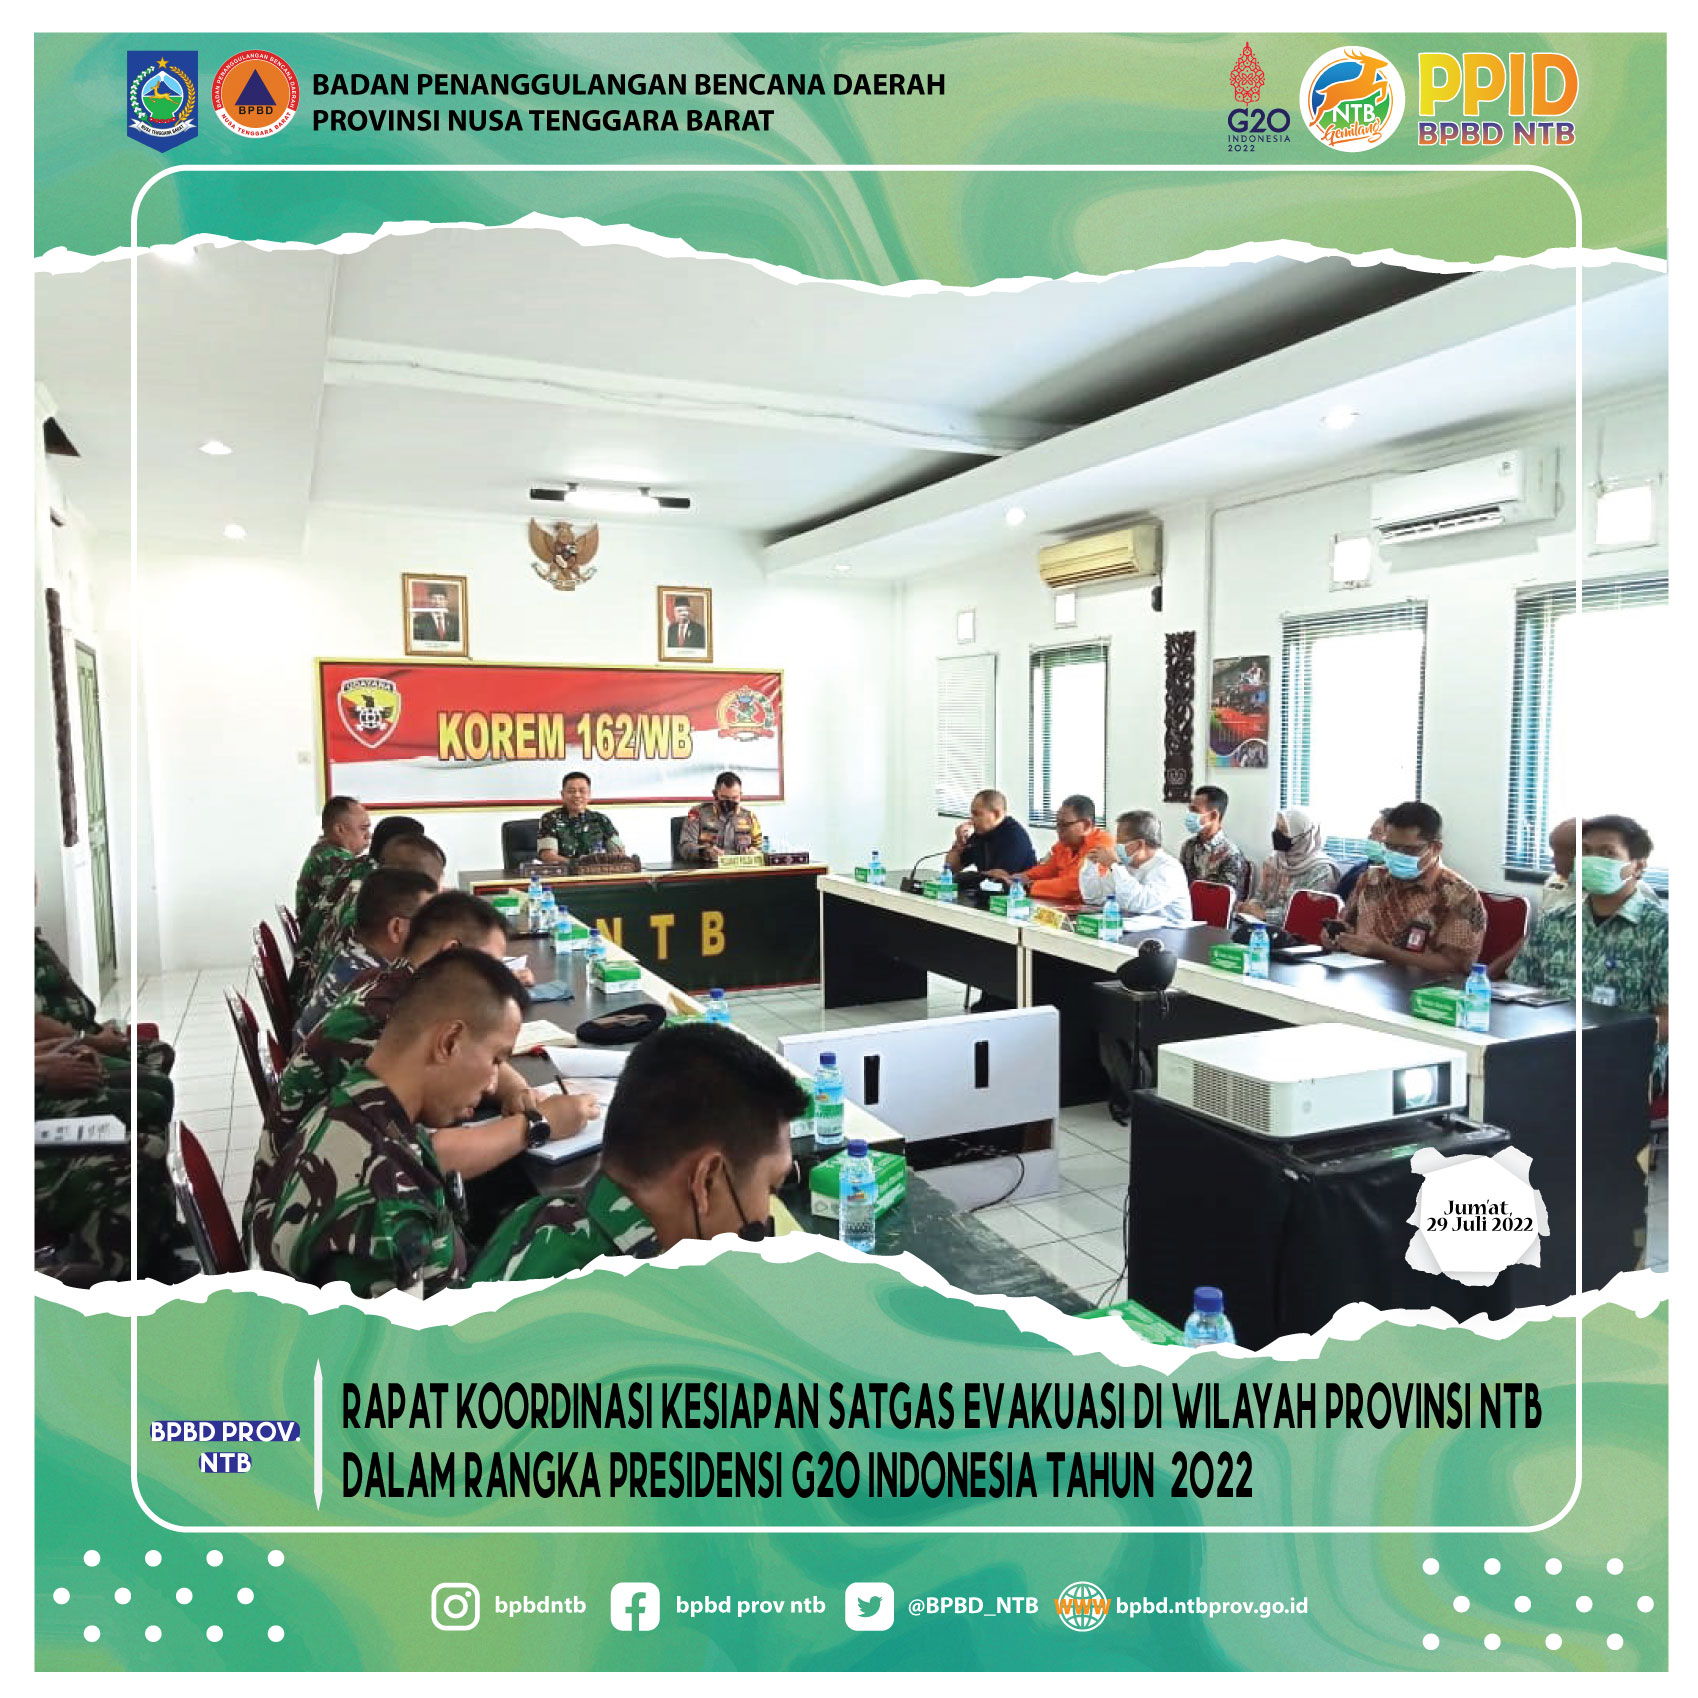 Rapat Koordinasi Kesiapan Satgas Evakuasi di Wilayah Provinsi NTB Dalam Rangka Presidensi G20 Indonesia Tahun  2022 (Jumat, 29 Juli 2022)